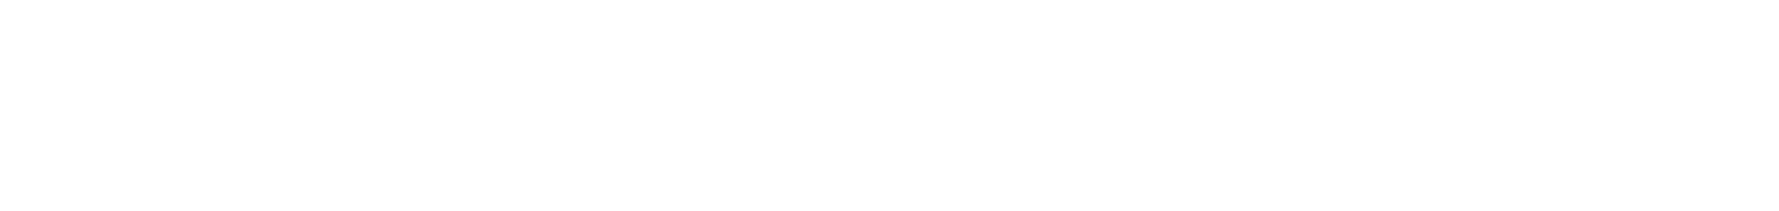 mc22-hubspot-header-logo